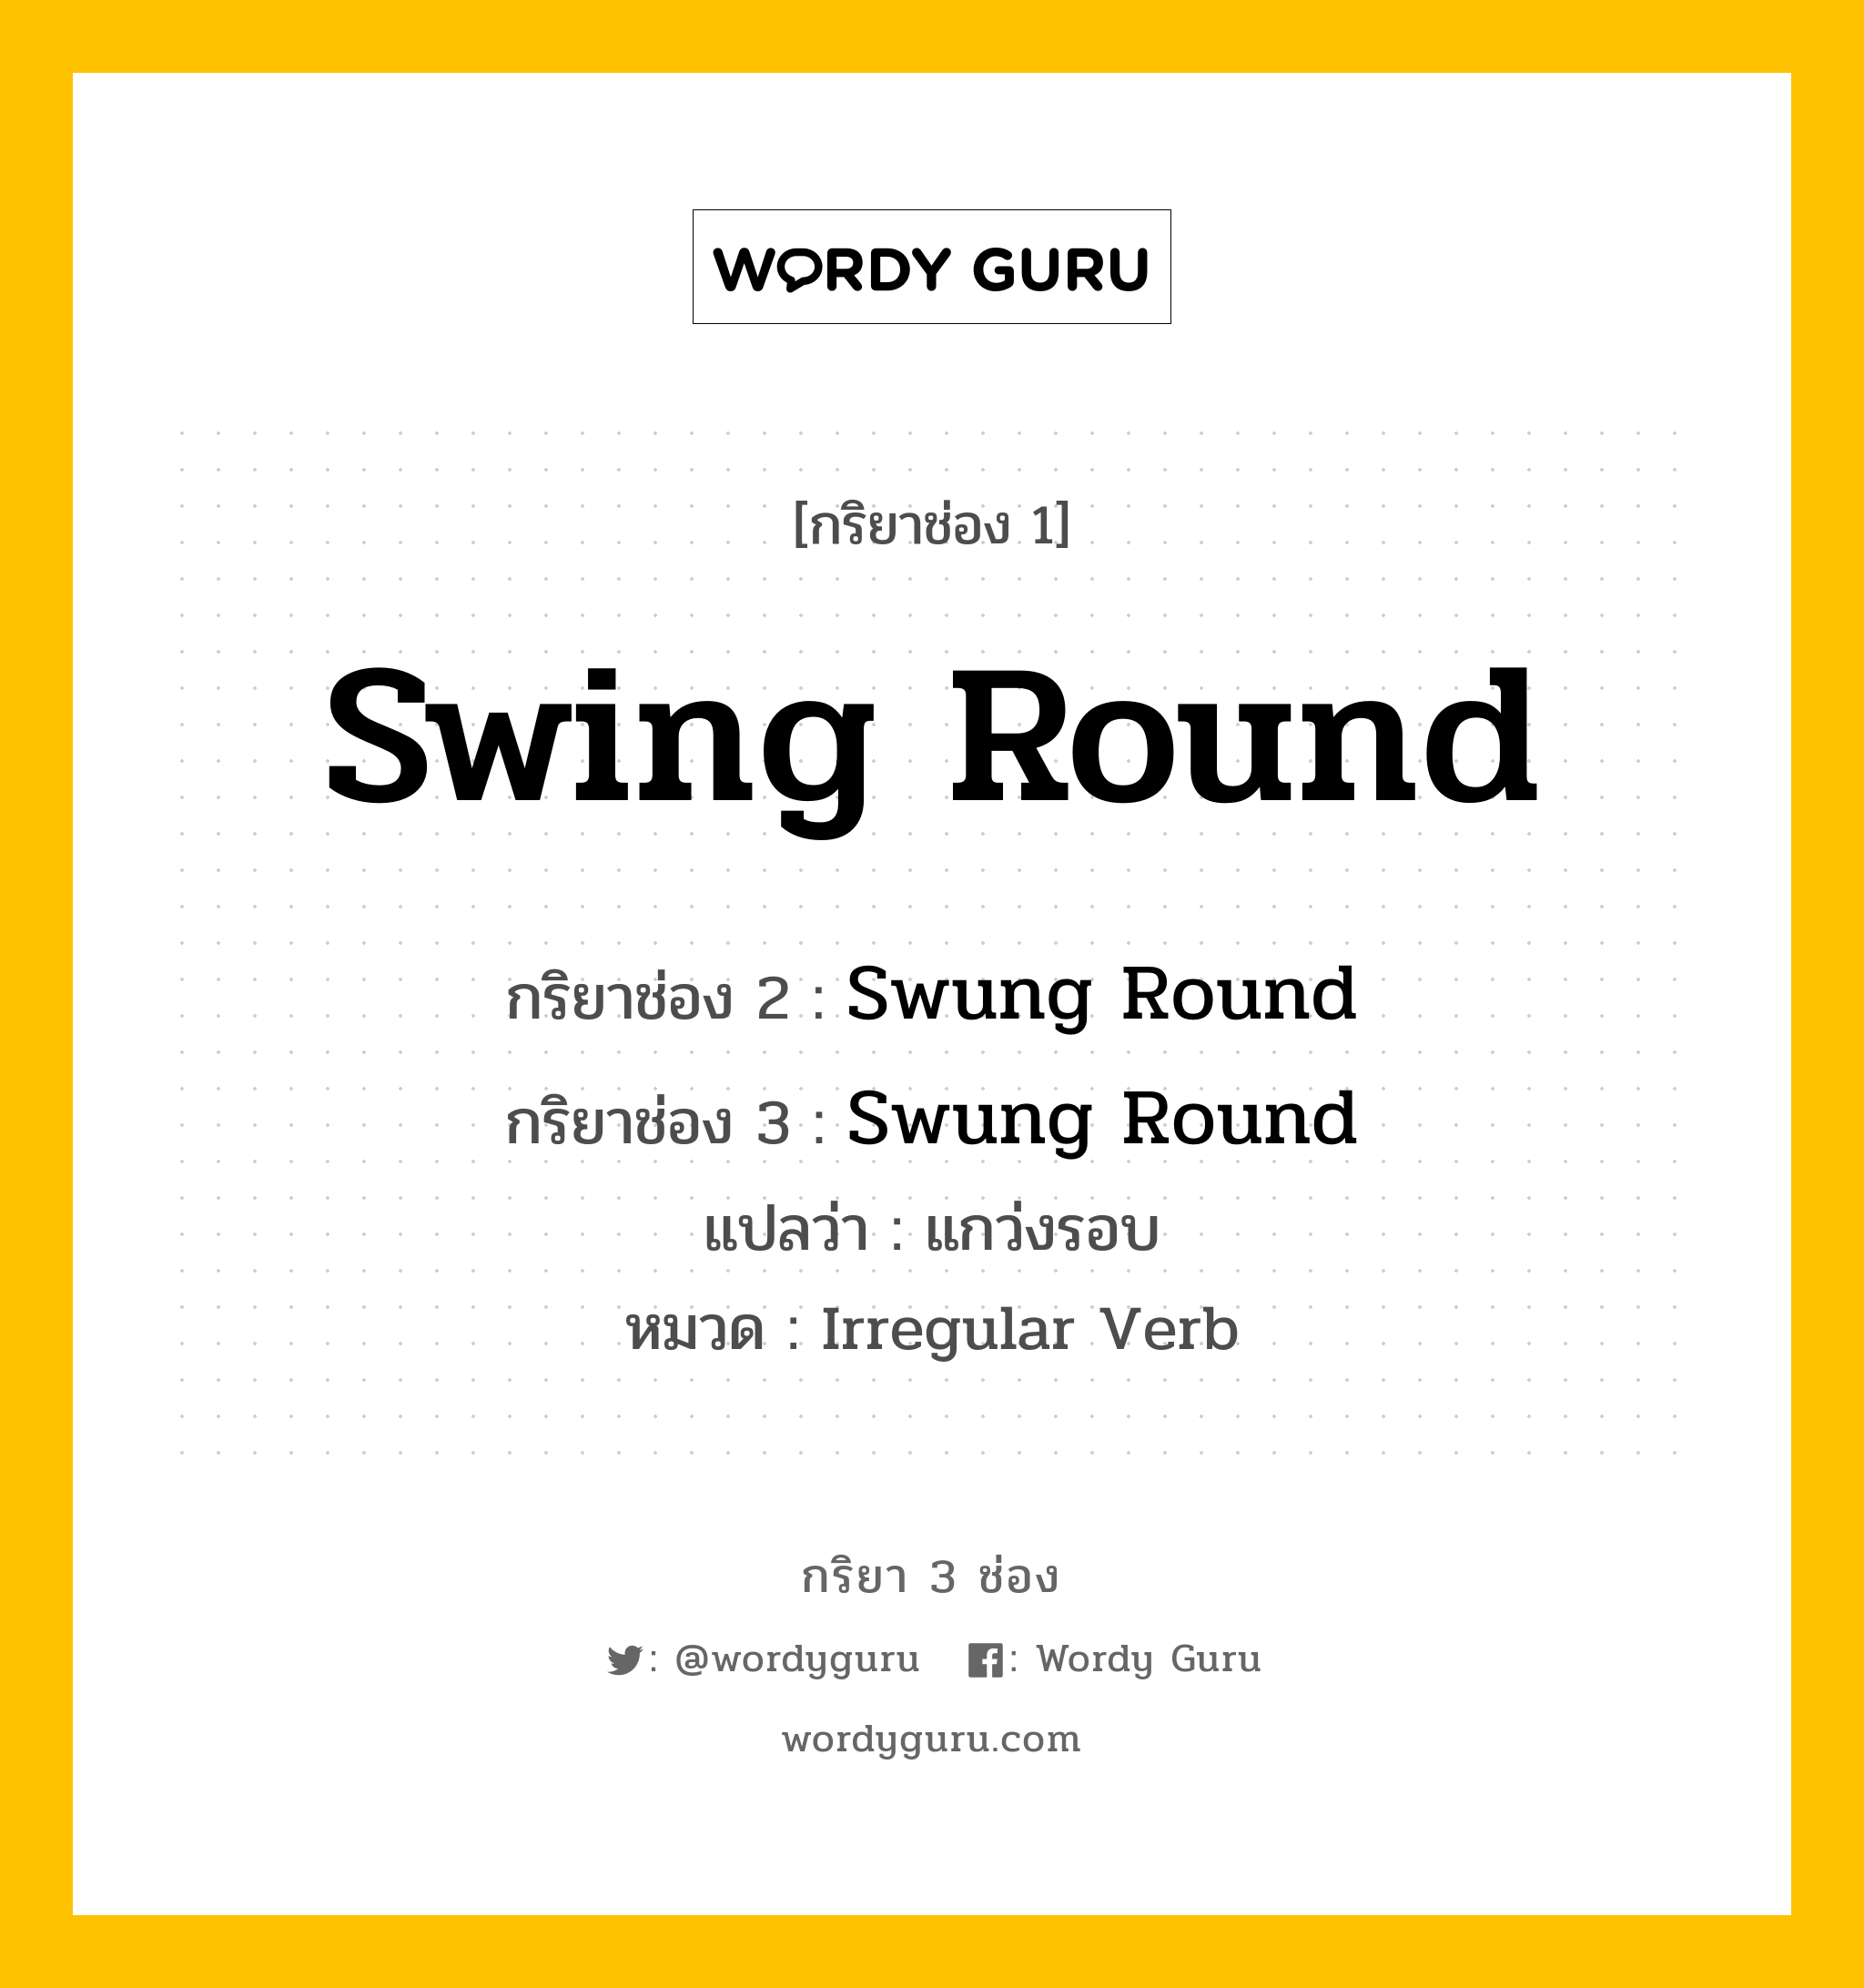 กริยา 3 ช่อง: Swing Round ช่อง 2 Swing Round ช่อง 3 คืออะไร, กริยาช่อง 1 Swing Round กริยาช่อง 2 Swung Round กริยาช่อง 3 Swung Round แปลว่า แกว่งรอบ หมวด Irregular Verb หมวด Irregular Verb